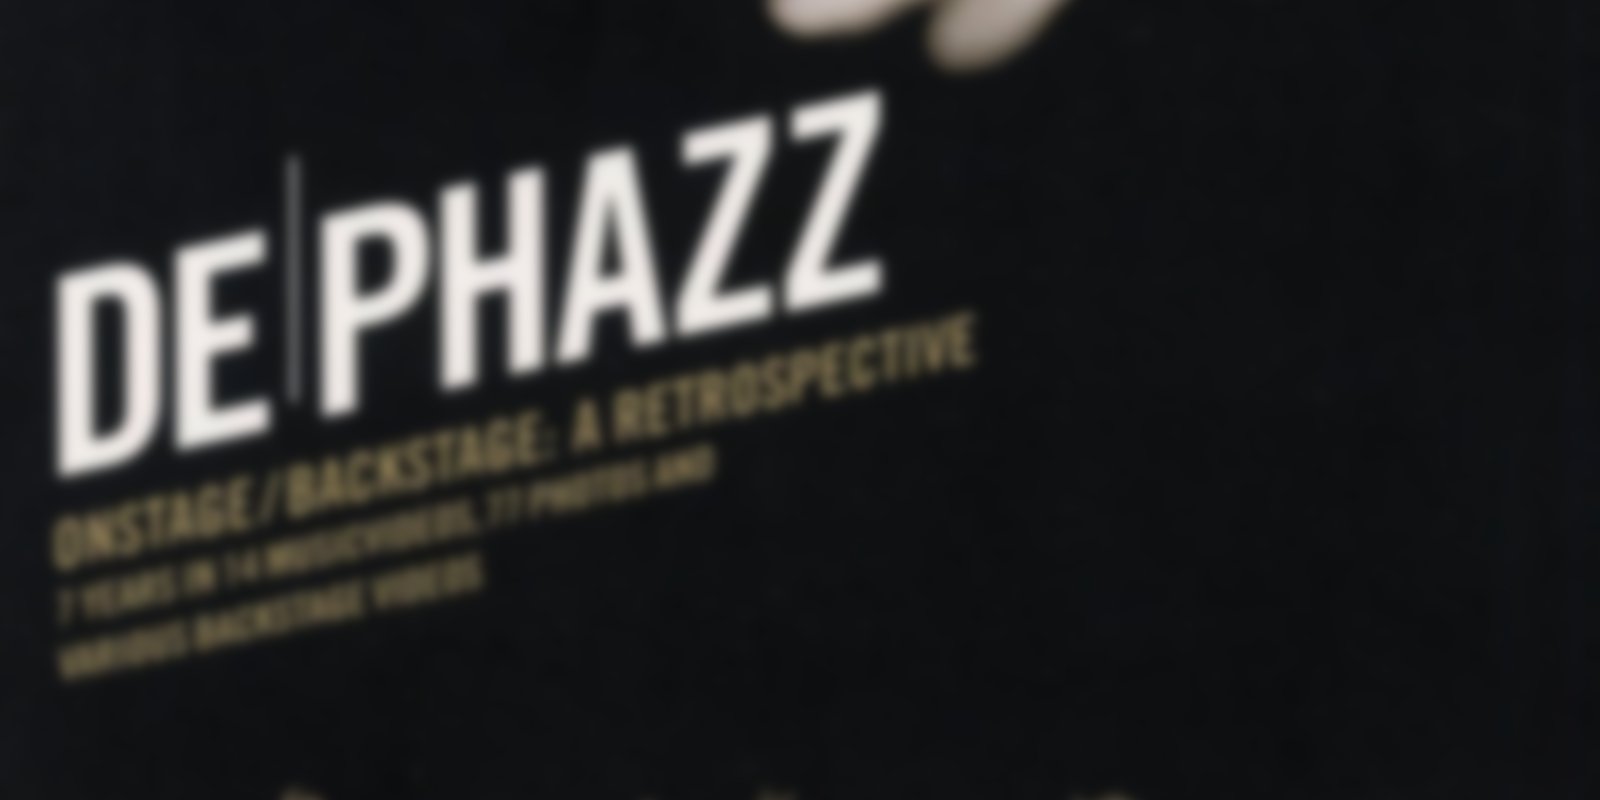 De Phazz - Onstage / Backstage: A Retrospective